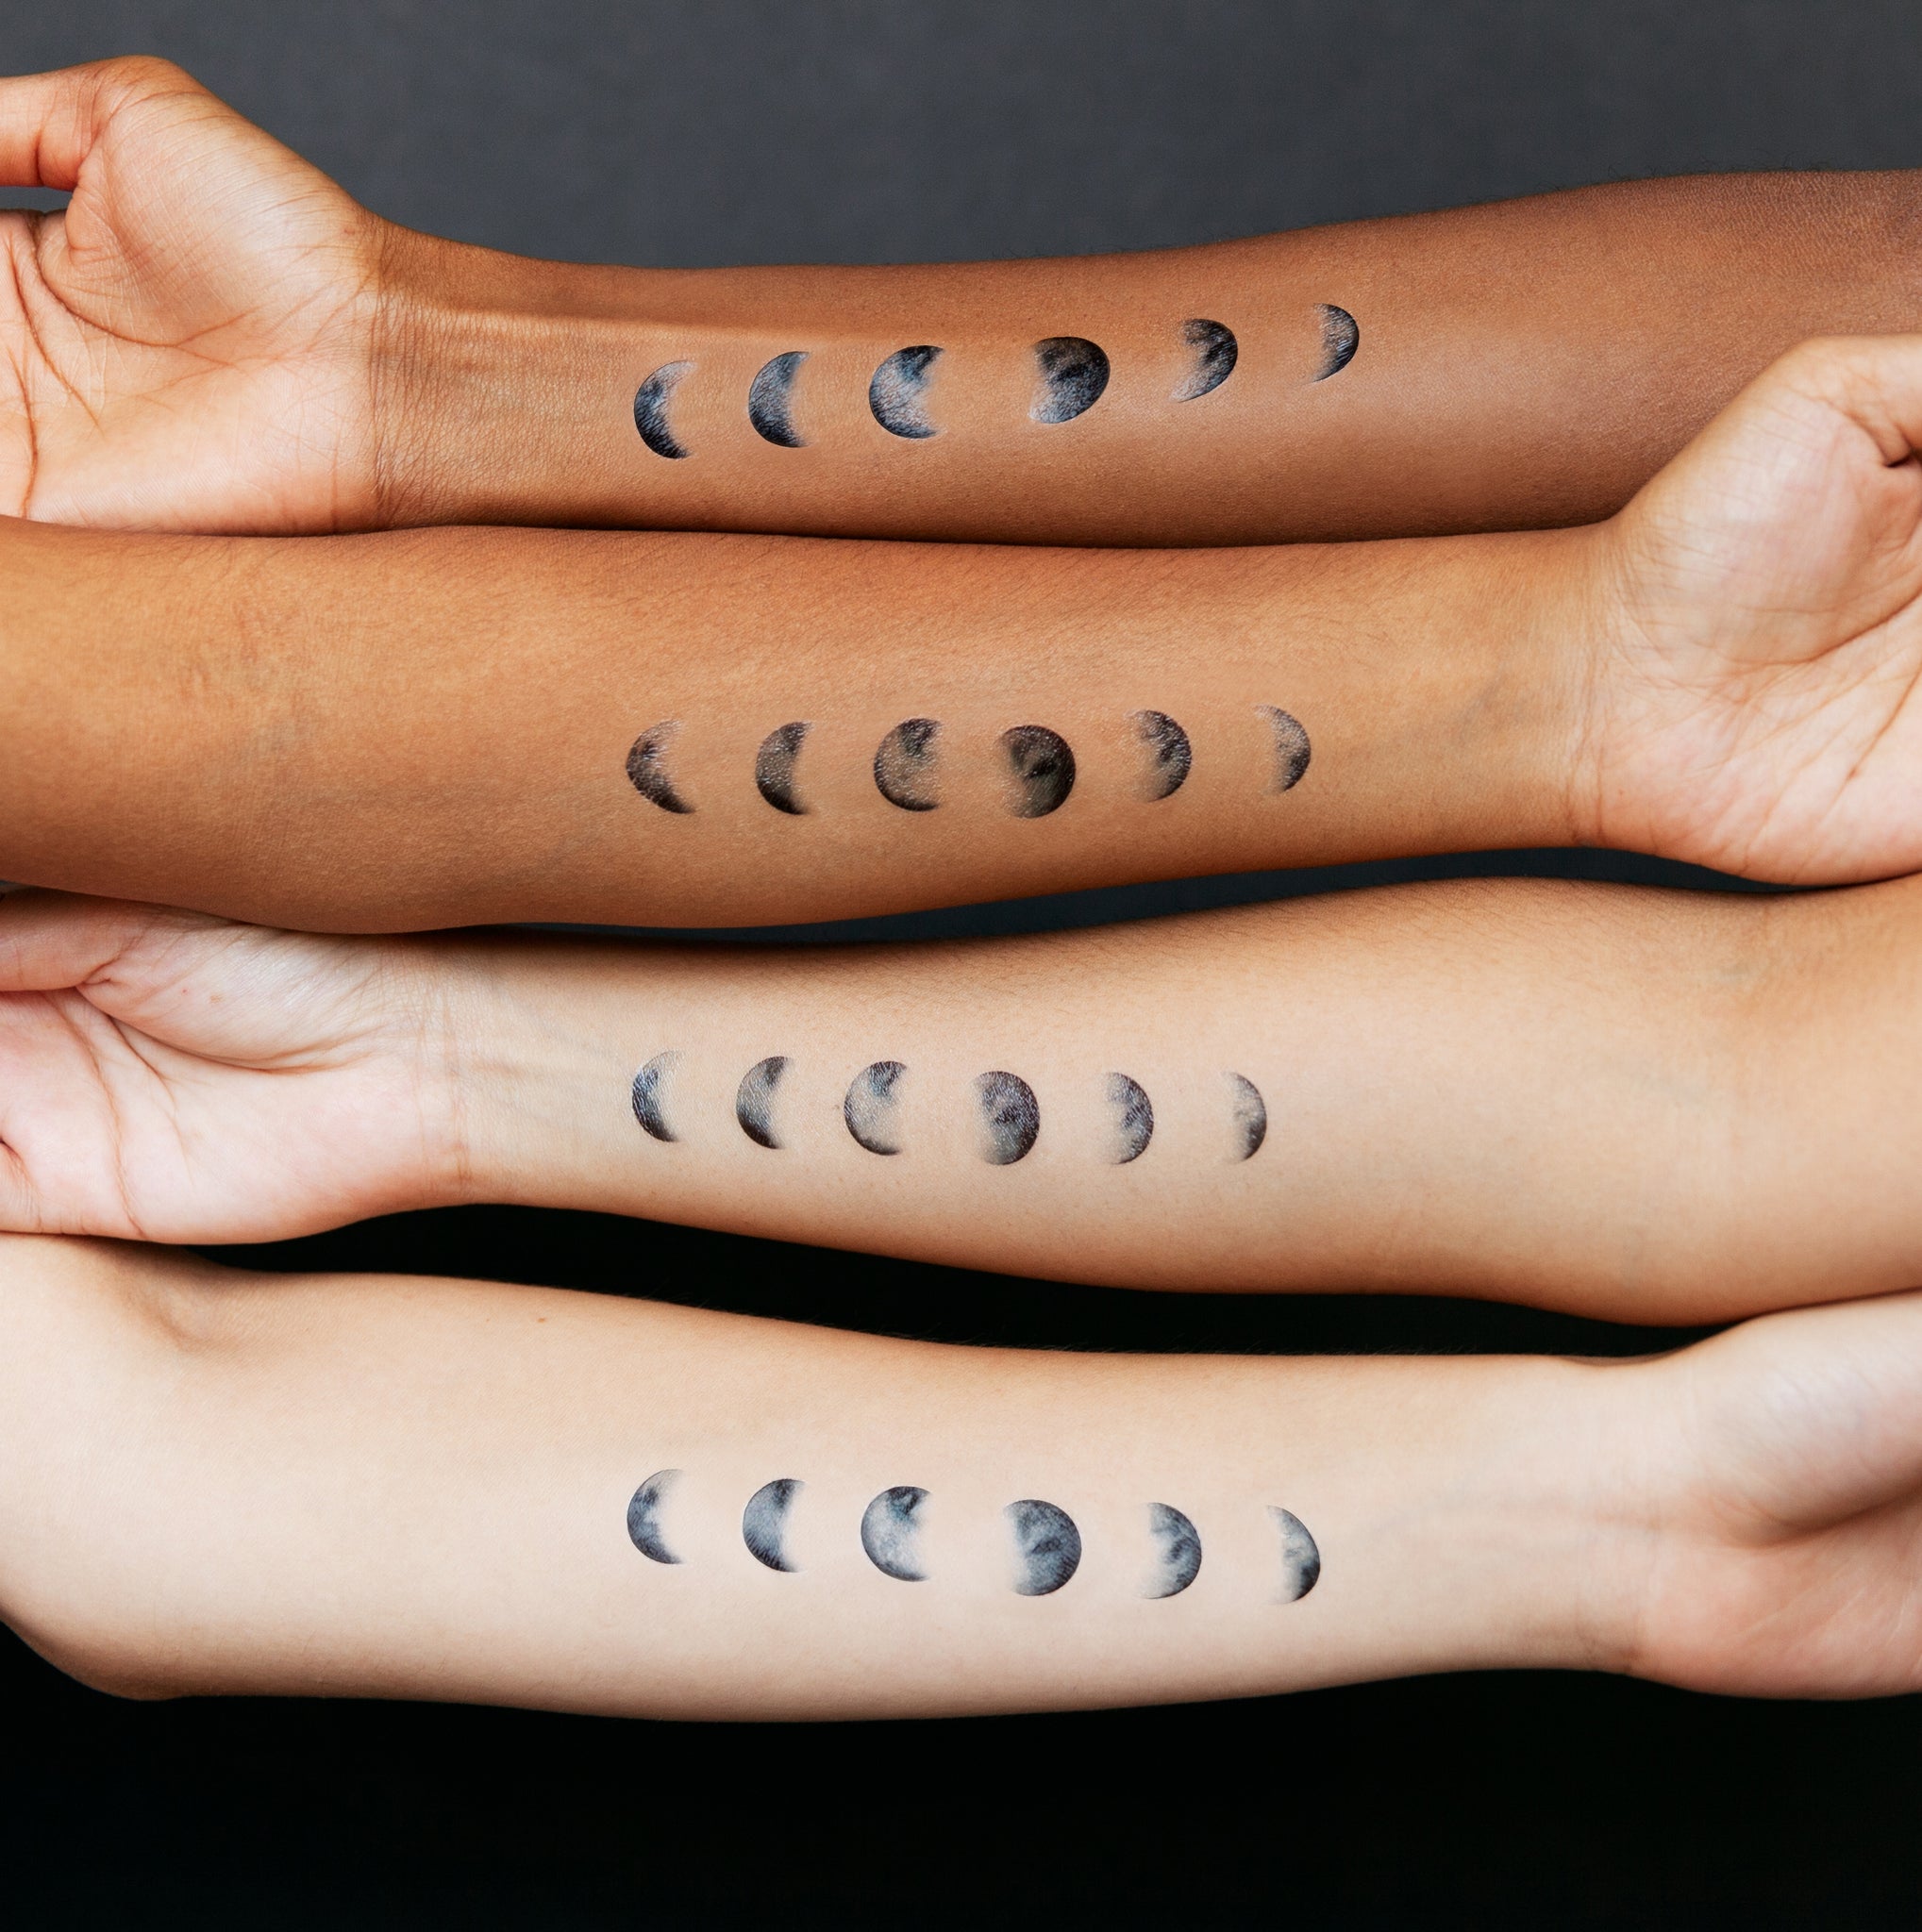 Moon Phases By Amanda Merino From Tattly Temporary Tattoos